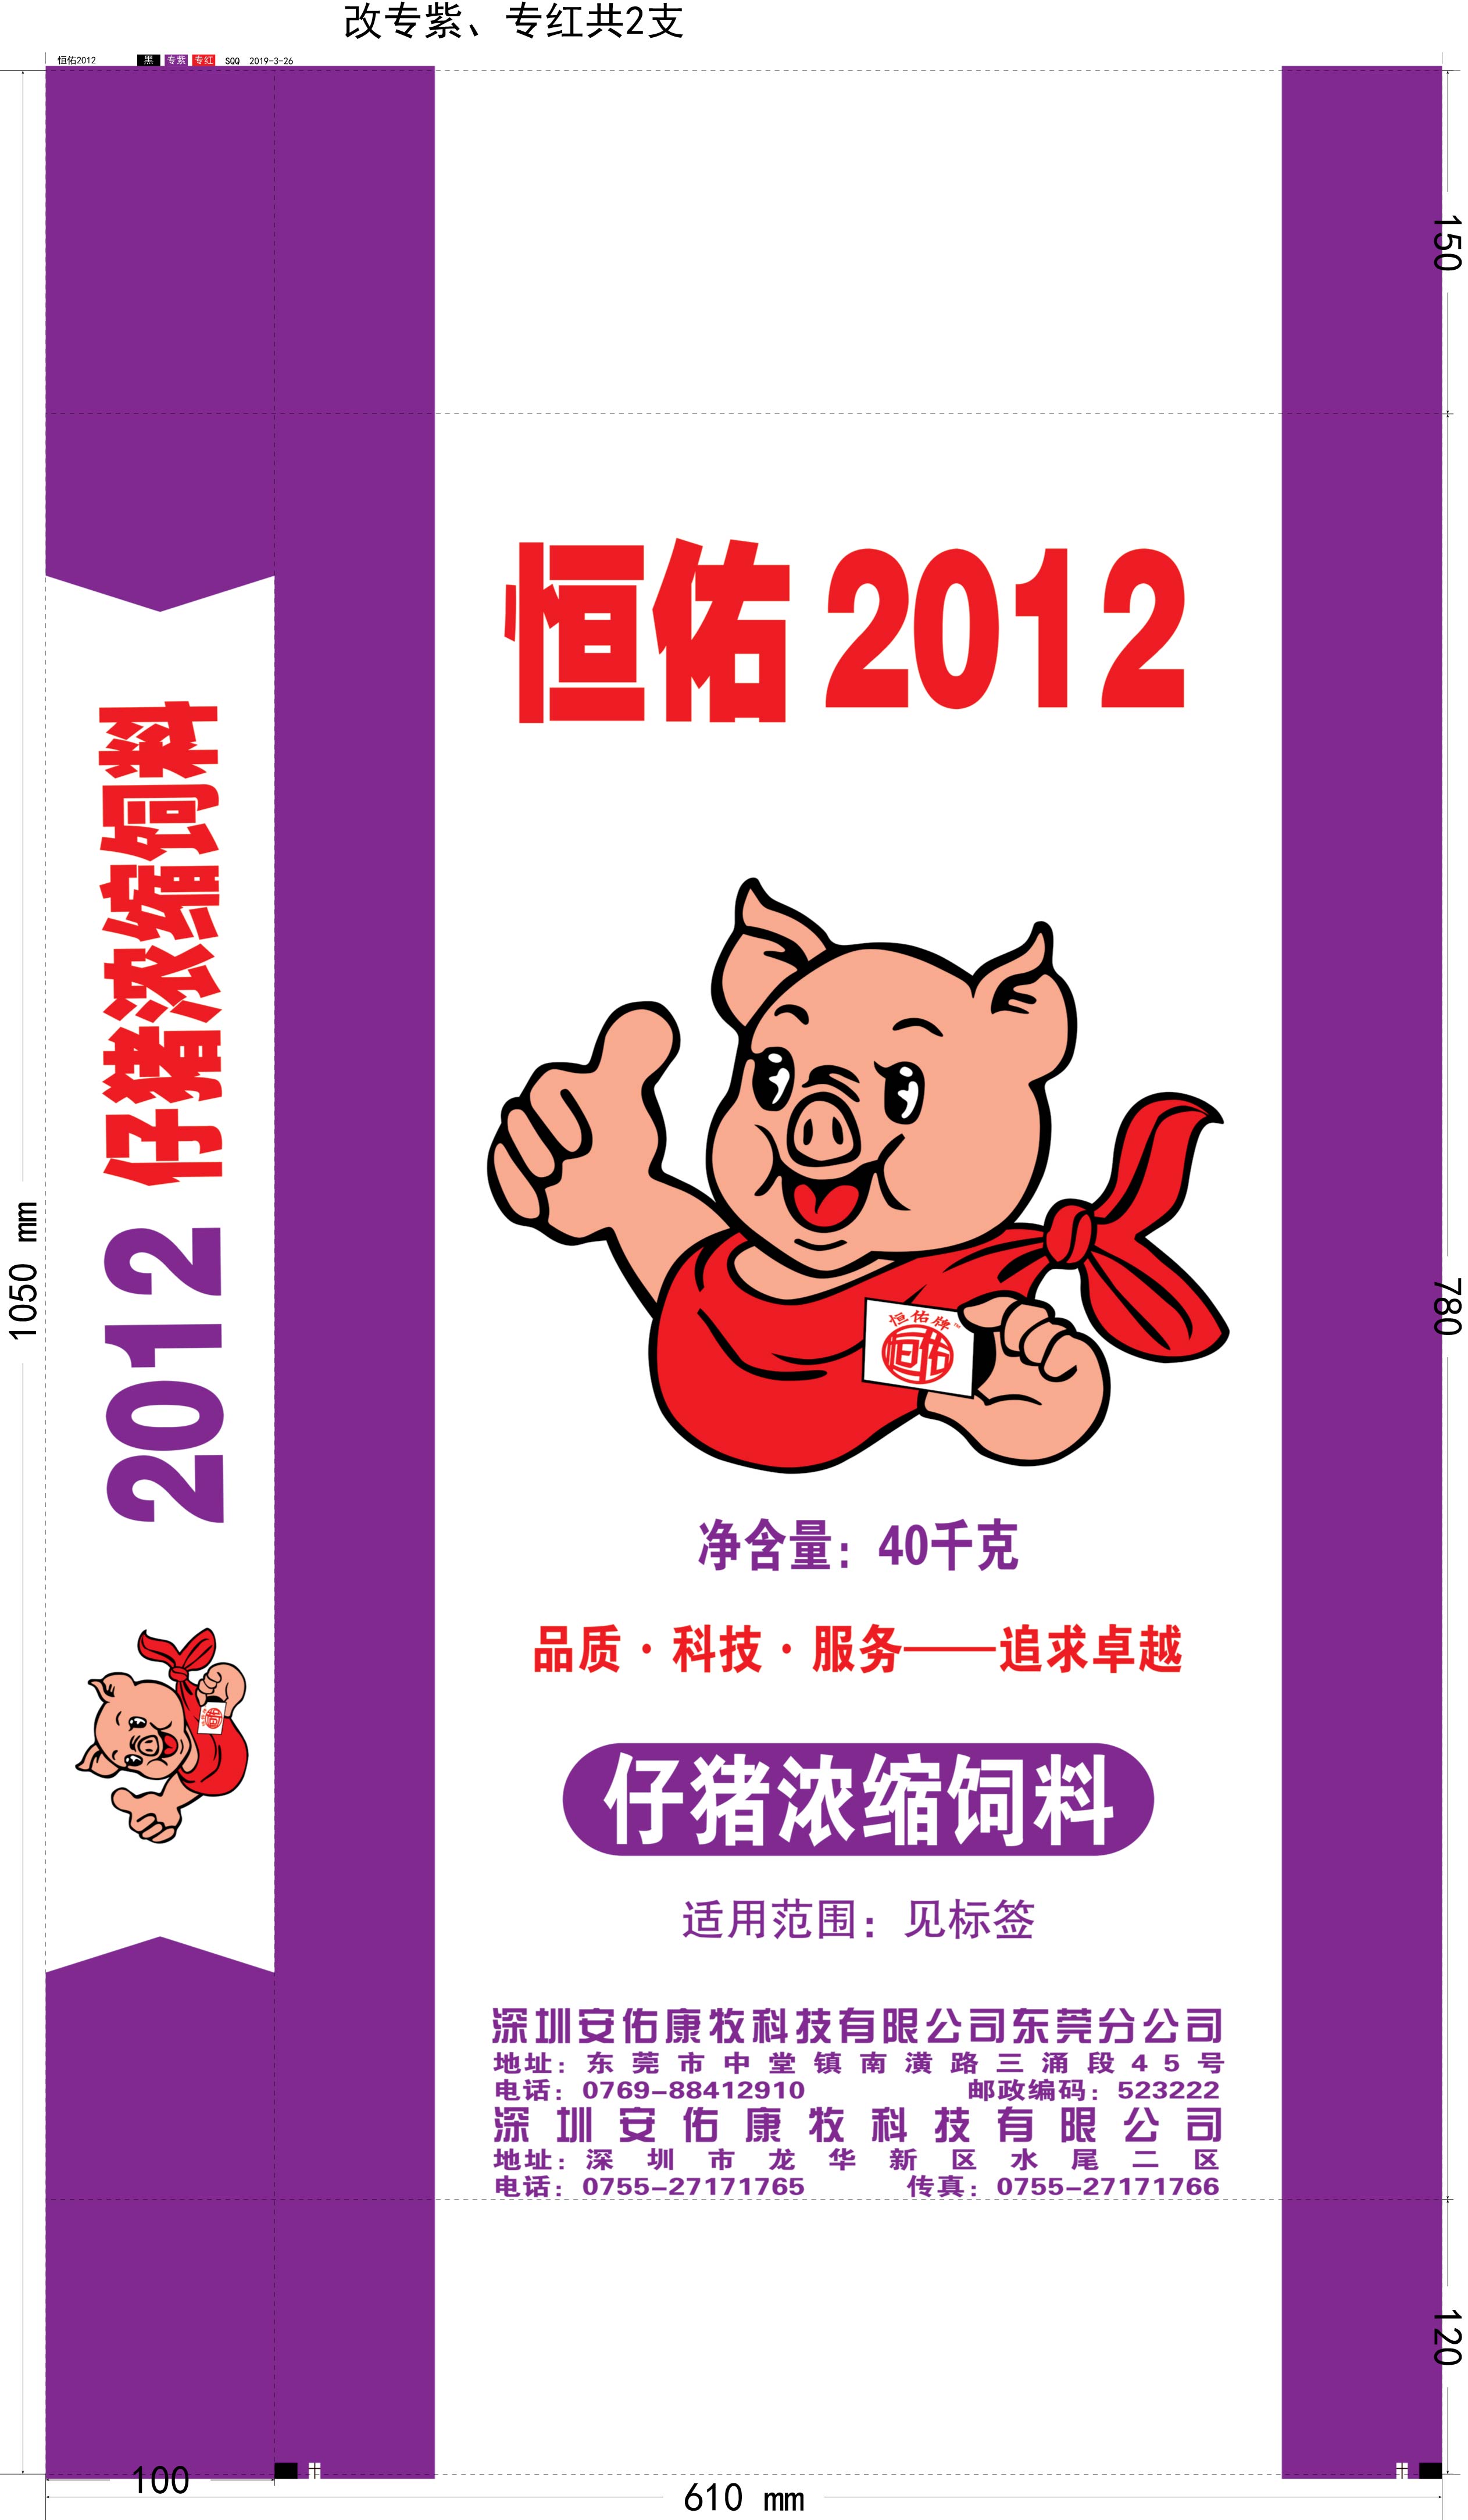 2012-仔猪浓缩饲料